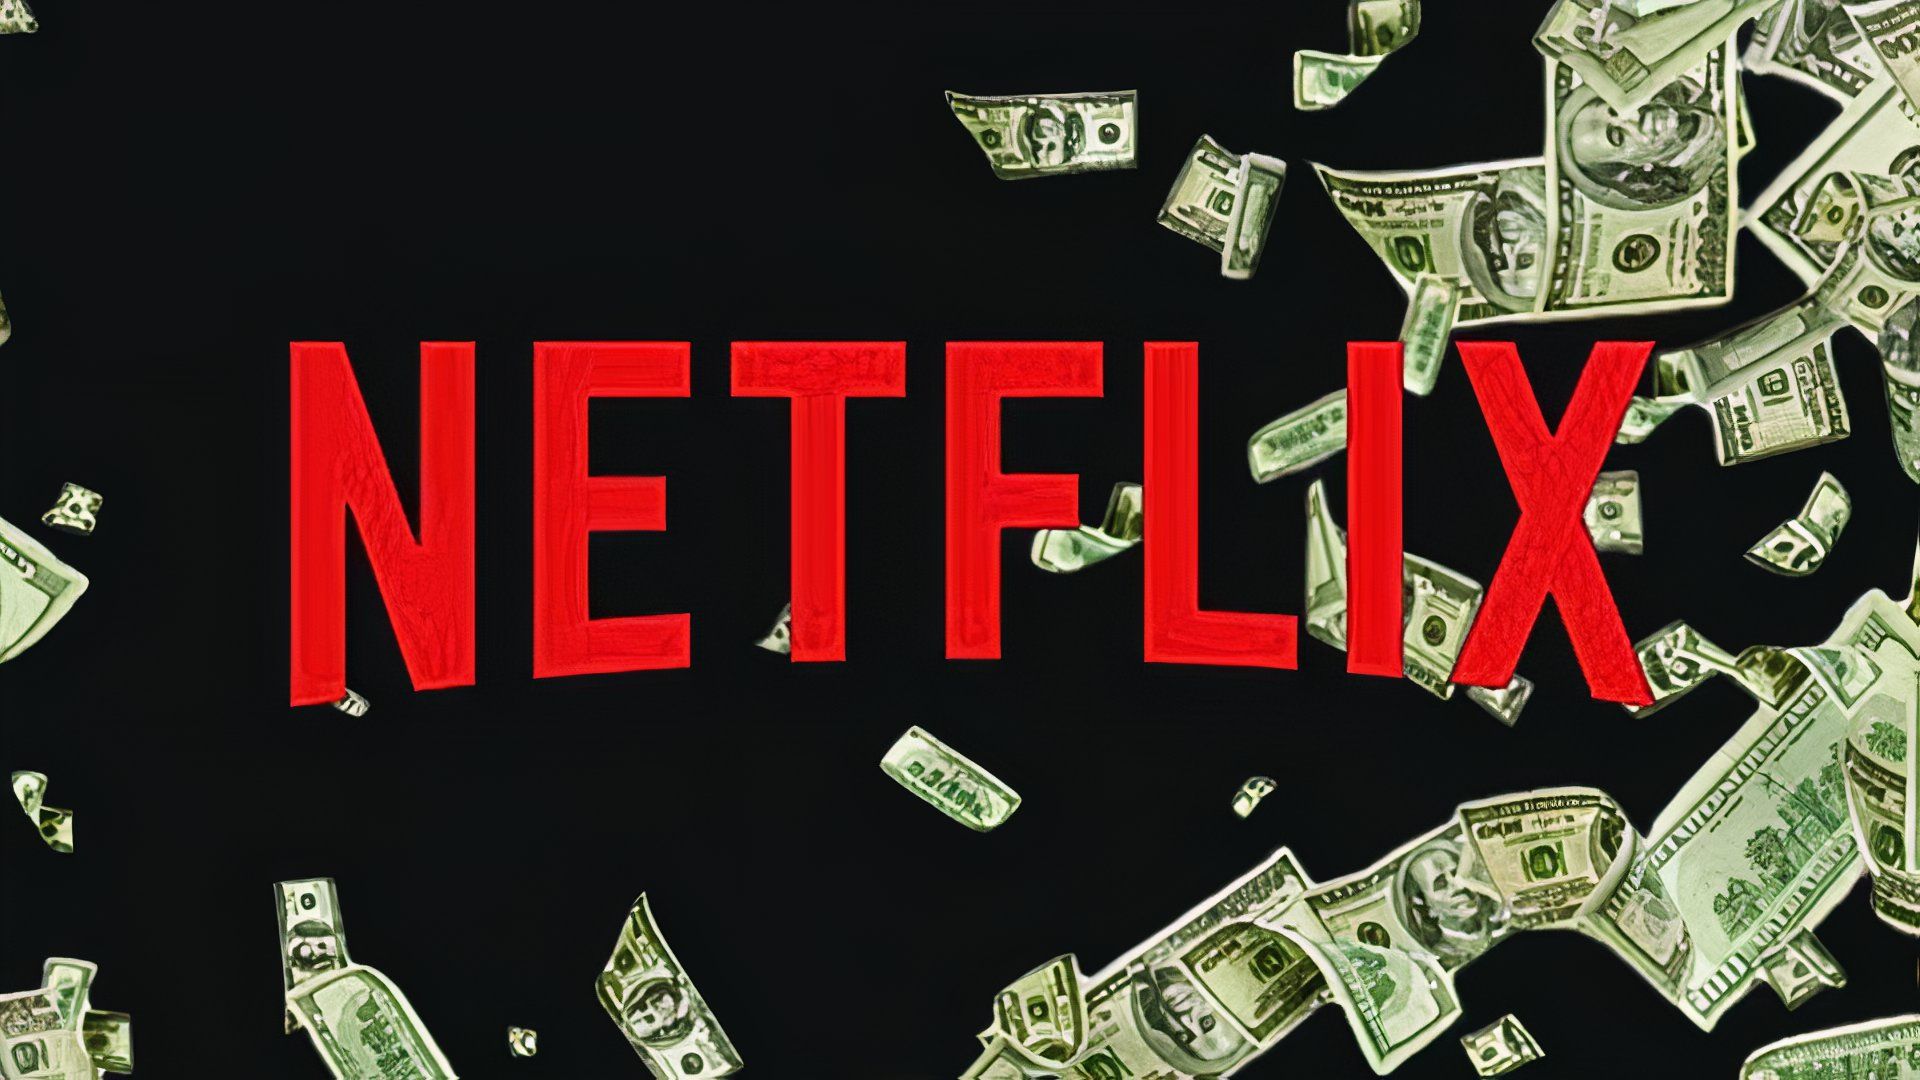 Cancel Netflix Trends After Major Political Donation Revealed